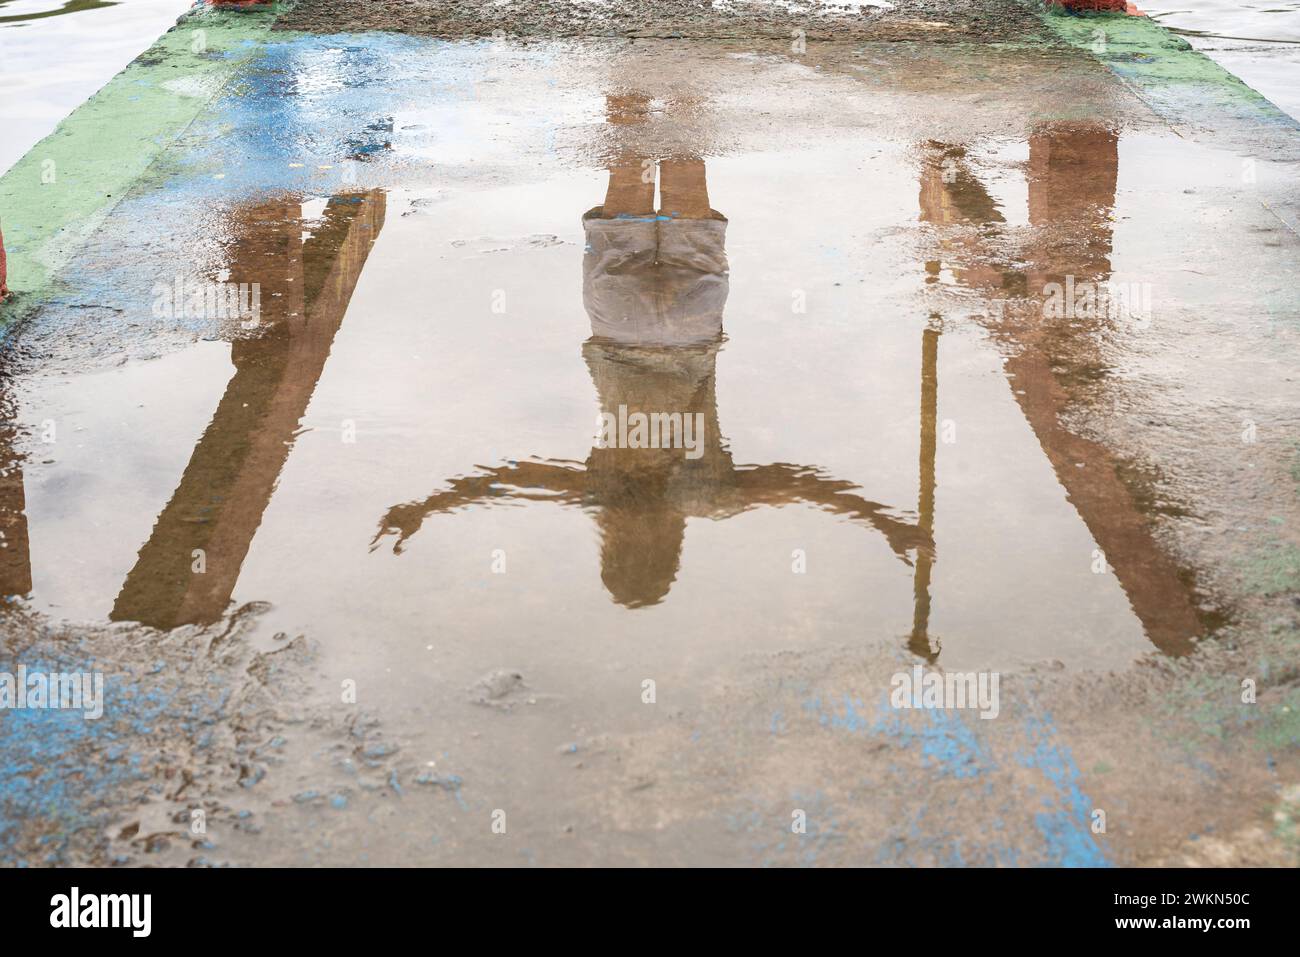 Riflesso di una persona non identificata nella pozzanghera di acqua sul pavimento in cemento. Foto astratte, sfondo e texture. Foto Stock